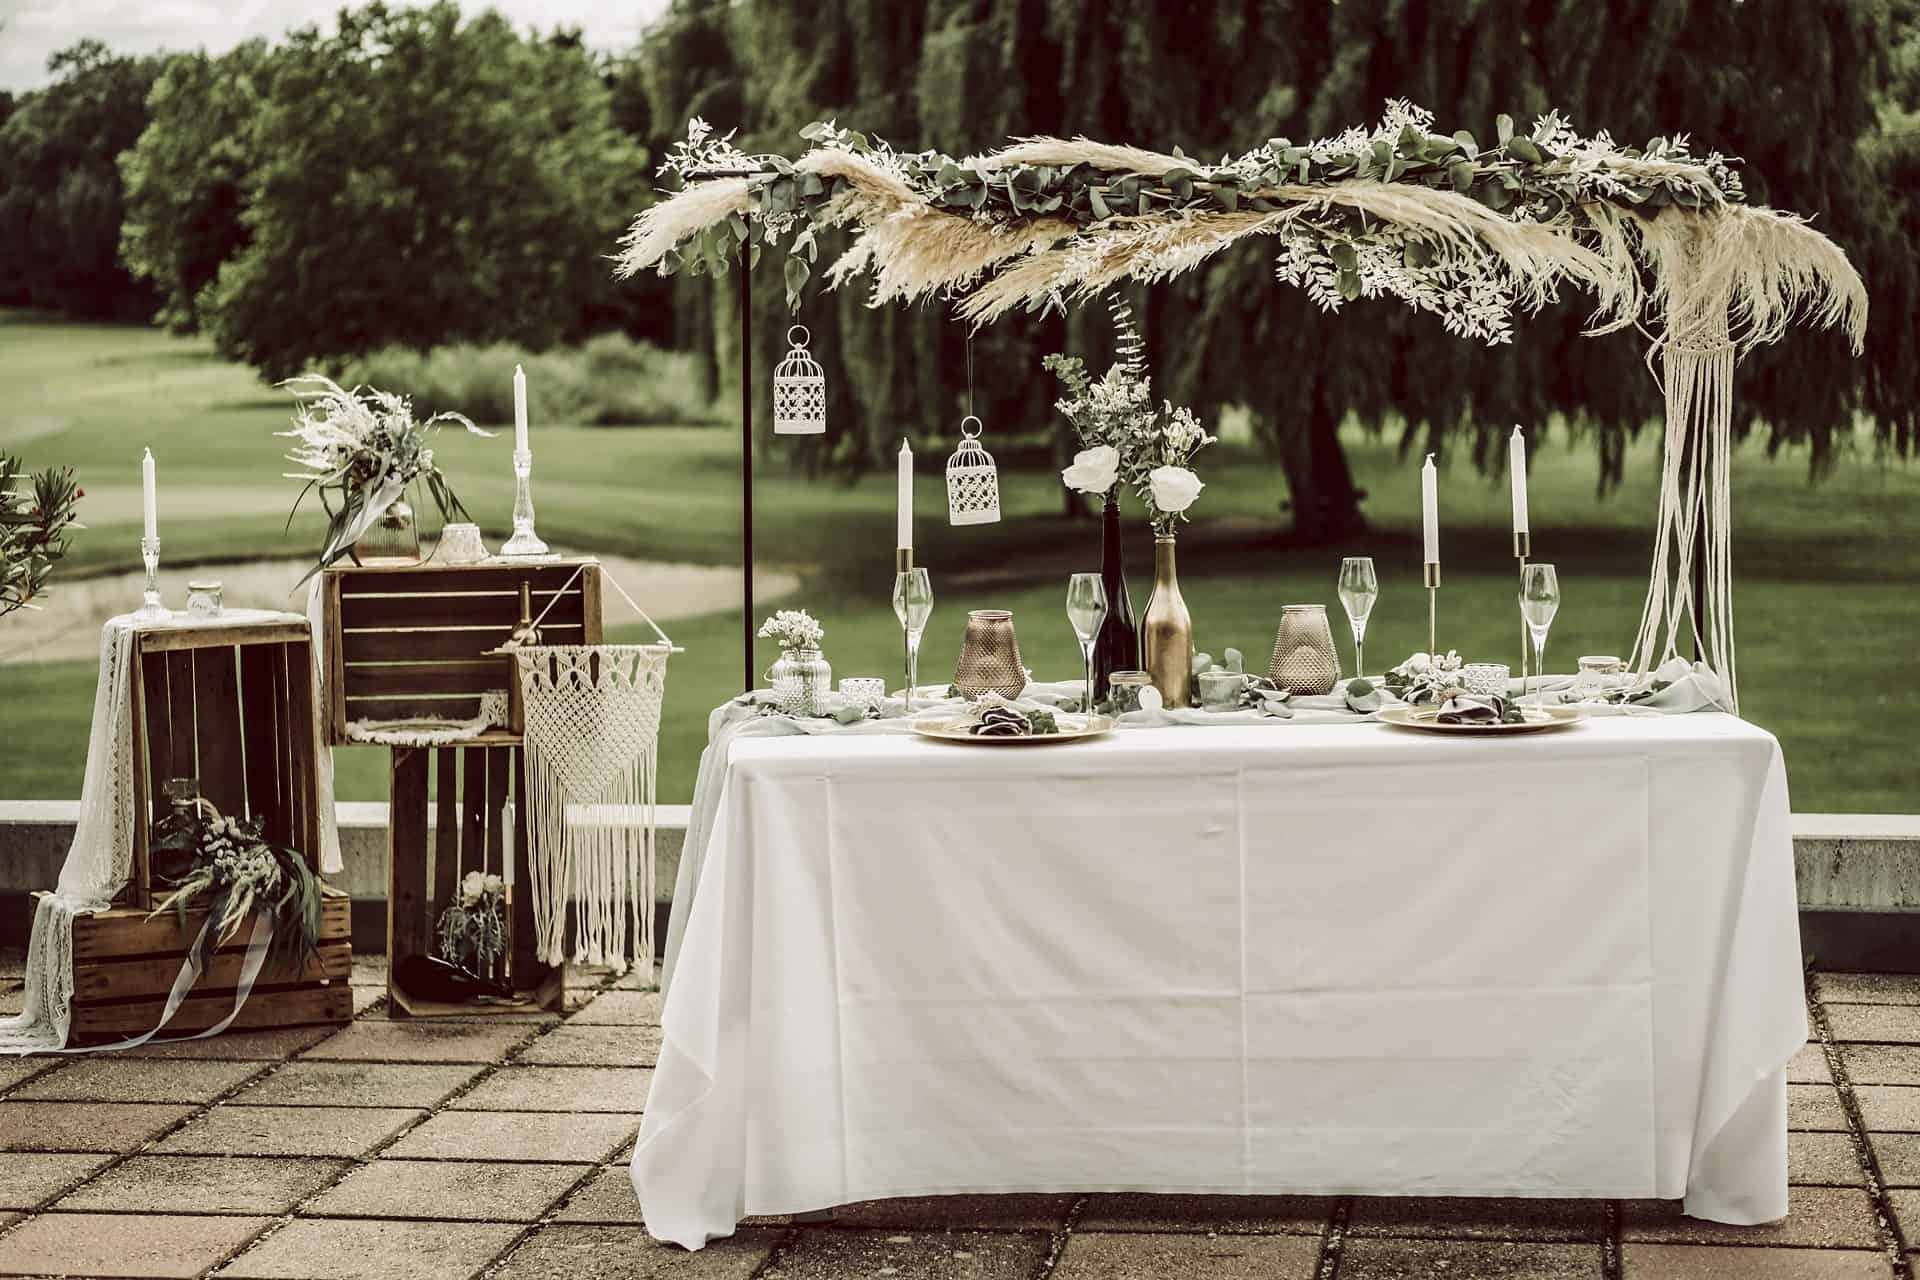 Ein für eine Hochzeit gedeckter Tisch mit Blumen und Kerzen.